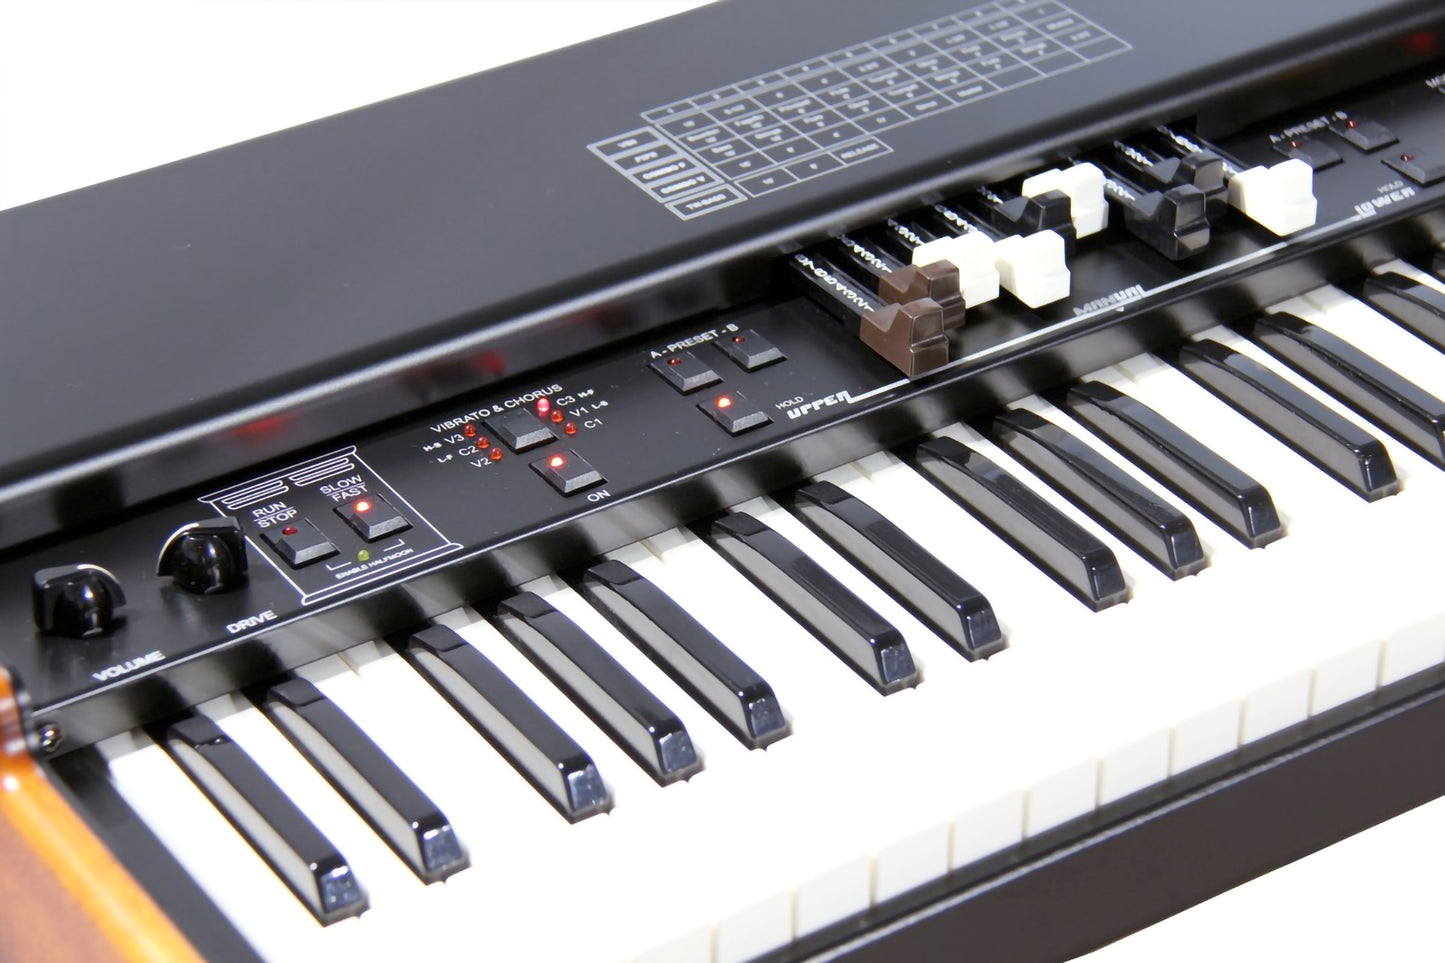 Crumar Mojo 61 61-Key Single Manual Organ